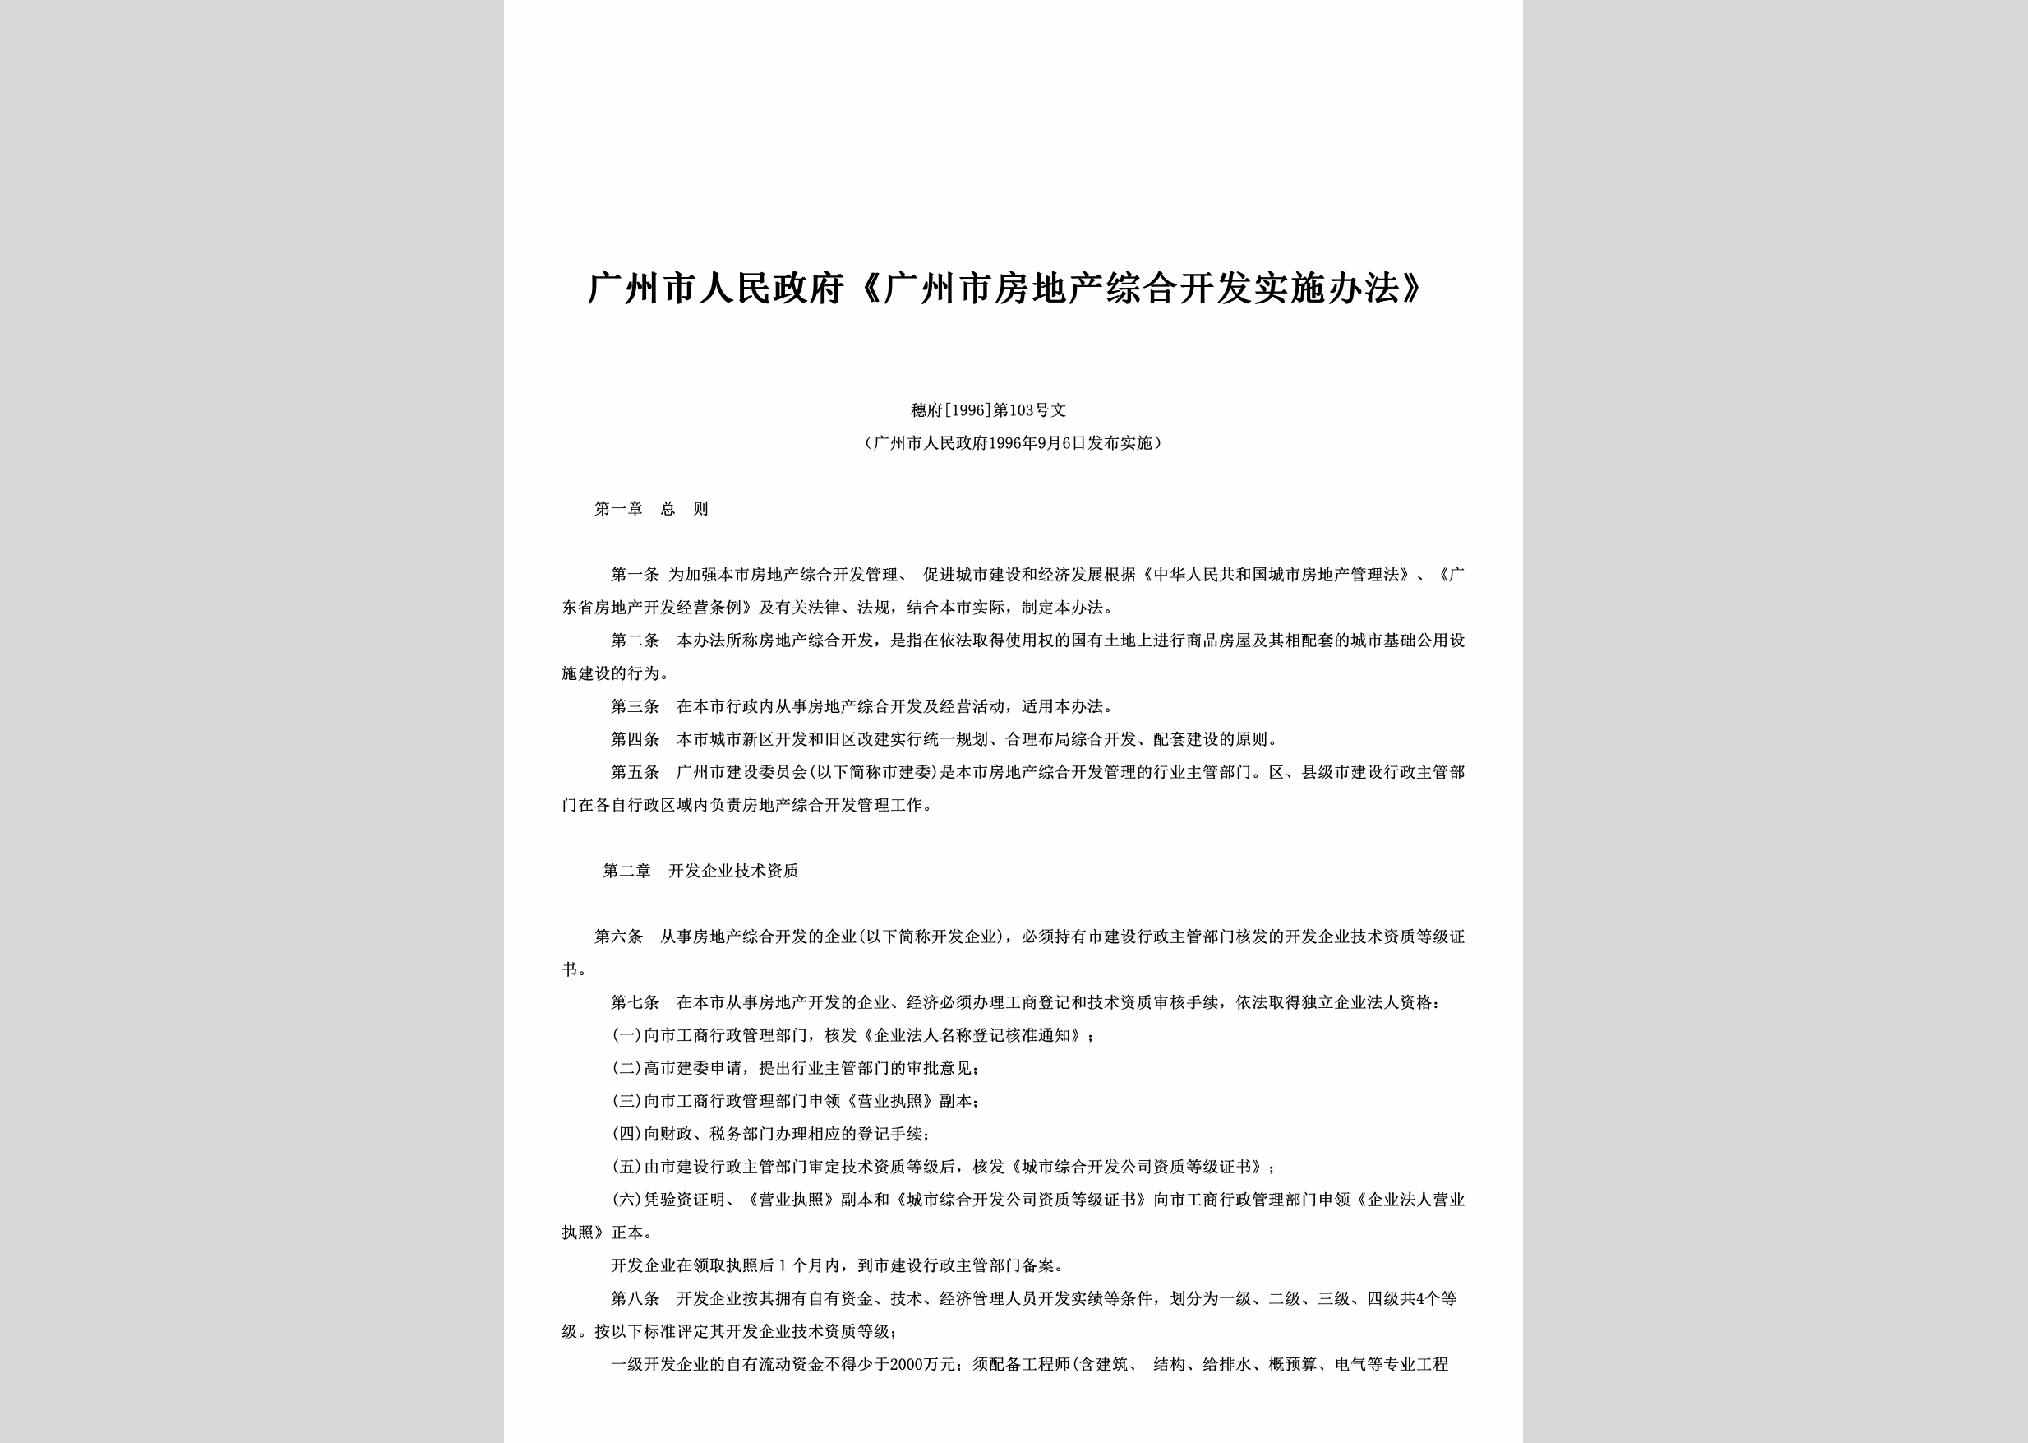 穗府[1996]103号：《广州市房地产综合开发实施办法》